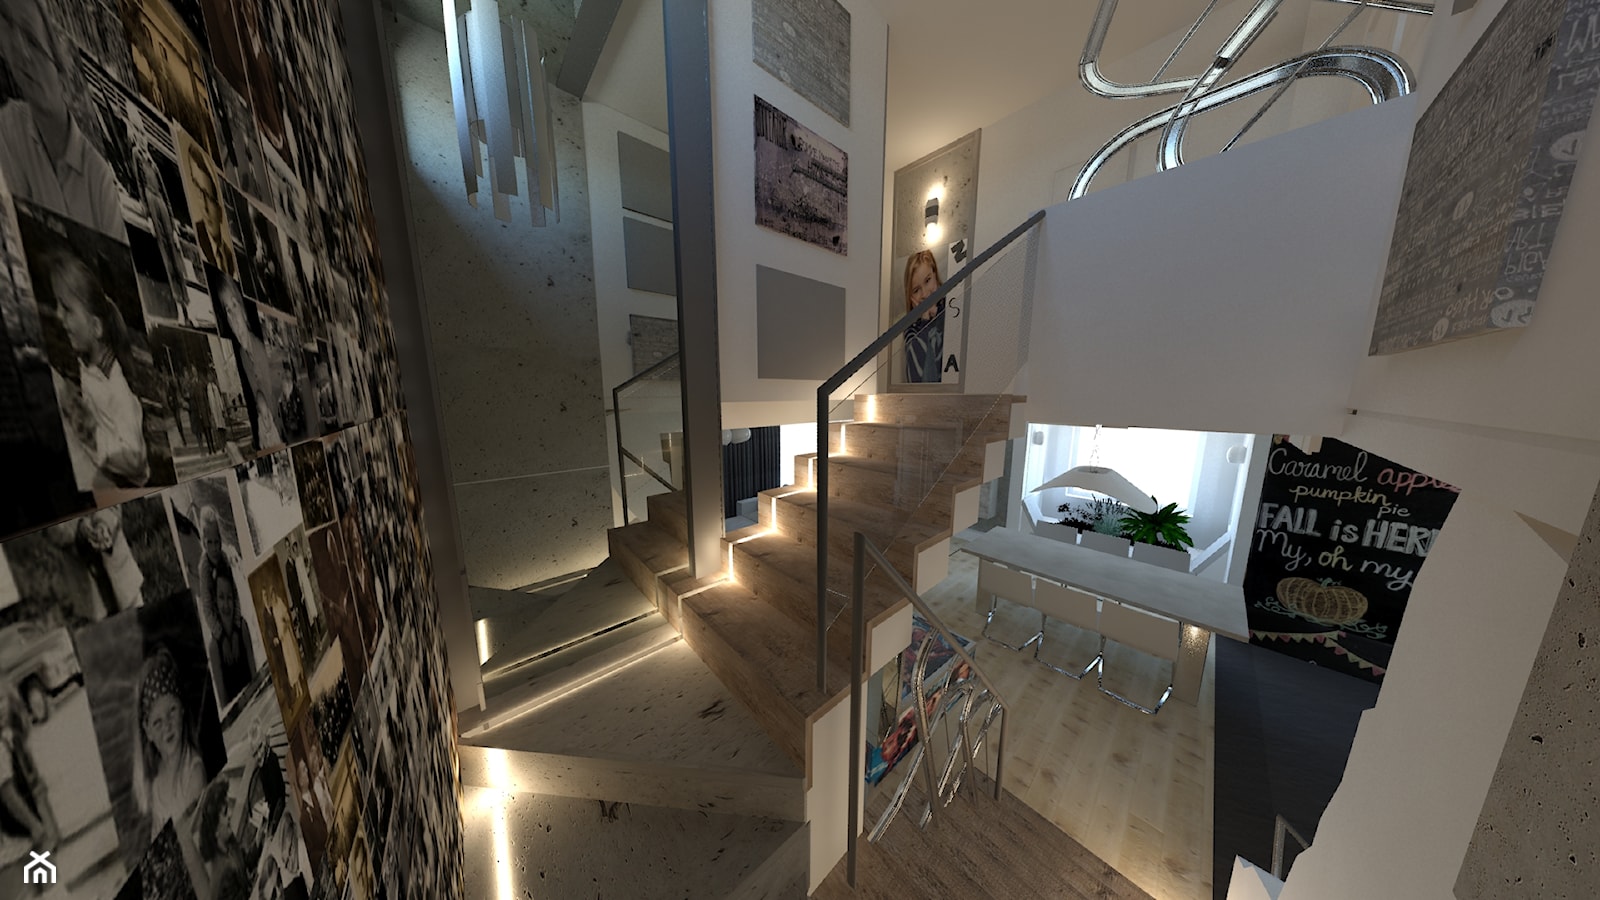 Dom - Schody dwubiegowe betonowe, styl nowoczesny - zdjęcie od Arthome - Homebook